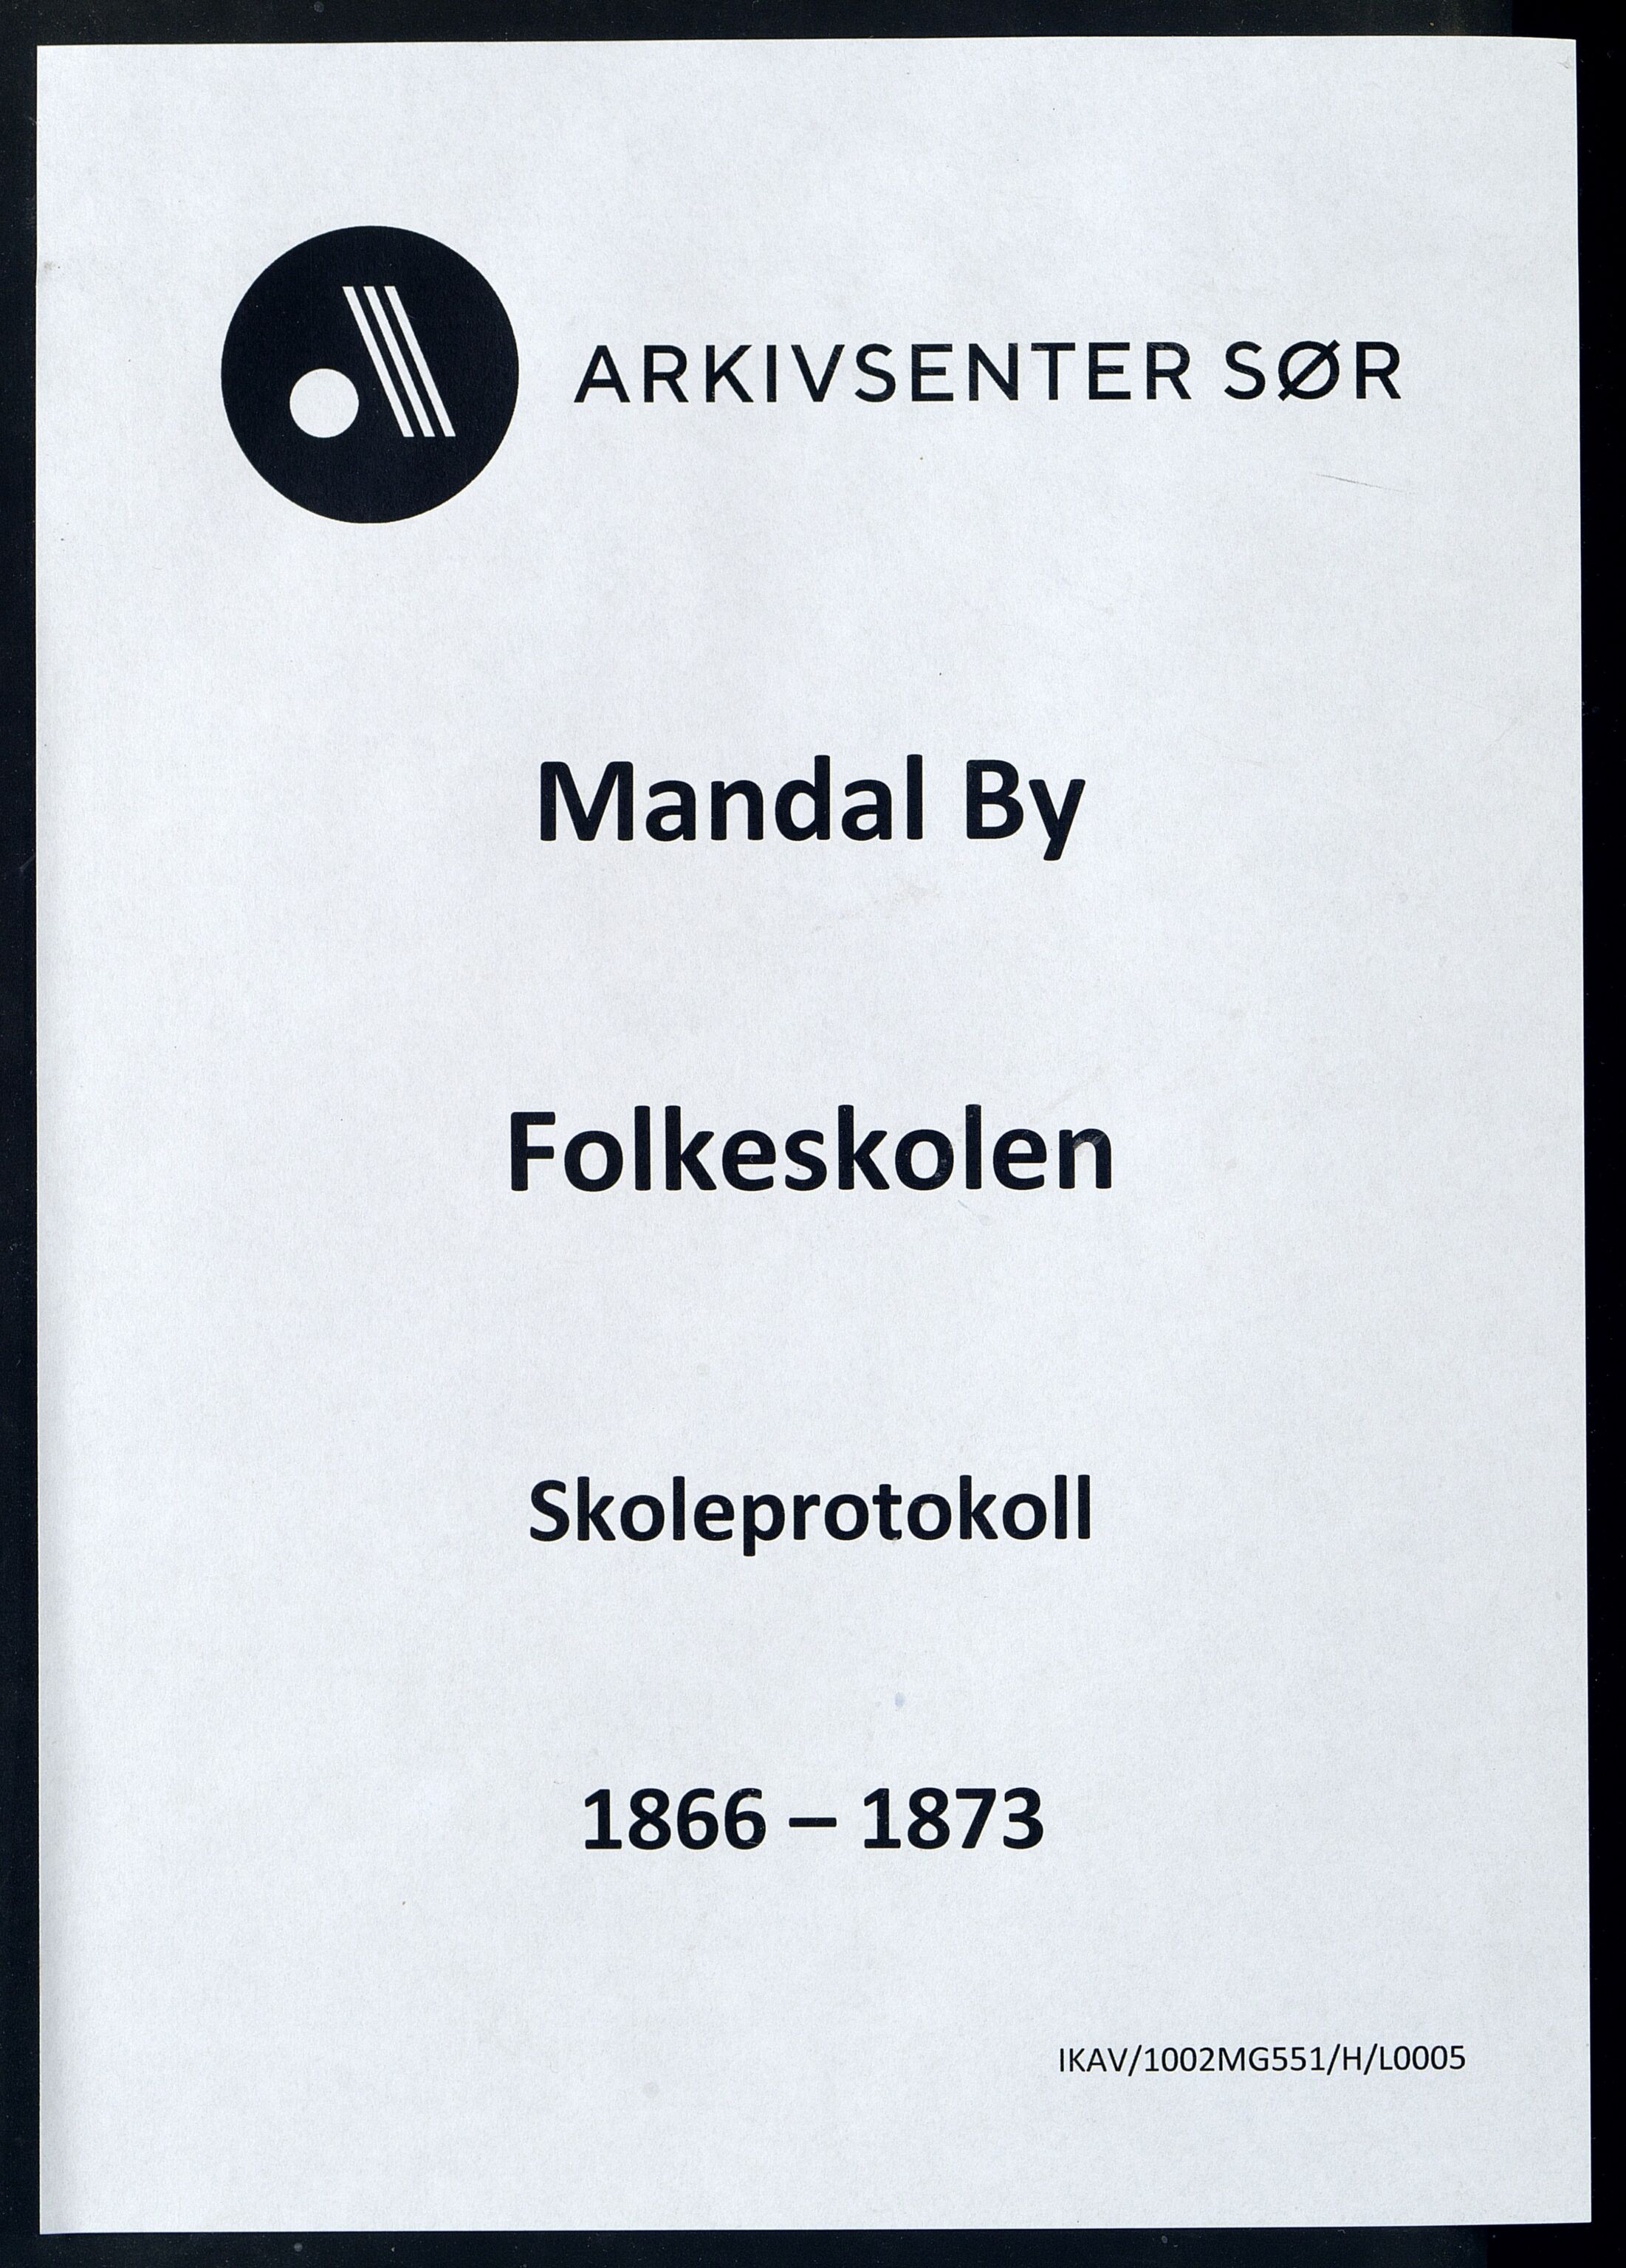 Mandal By - Mandal Allmueskole/Folkeskole/Skole, IKAV/1002MG551/H/L0005: Skoleprotokoll, 1866-1873